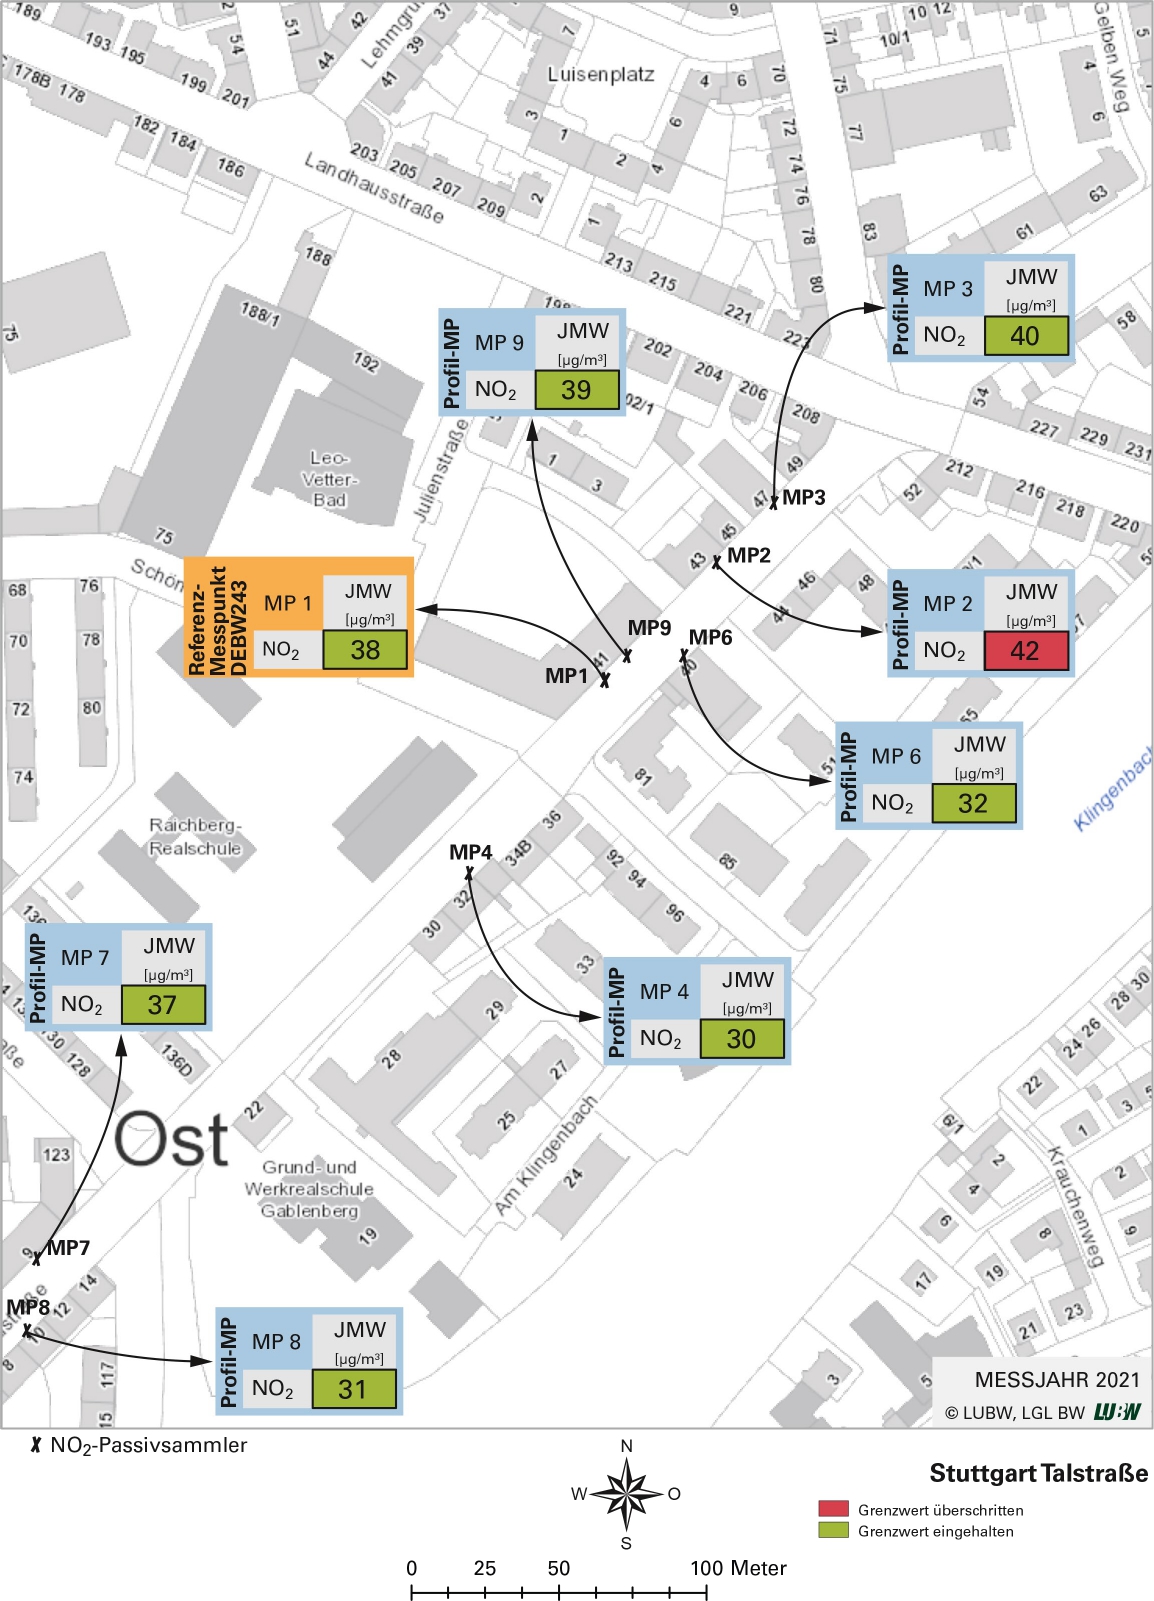 Kartenausschnitt, der die Lage der Messstelle Stuttgart Talstraße (Referenzmesspunkt) sowie der 7 Profilmesspunkte zeigt. Dargestellt sind zudem die Ergebnisse (Jahresmittelwerte 2021) der sowohl am Referenzmesspunkt als auch an den Profilmesspunkten gemessenen Stickstoffdioxidbelastung.